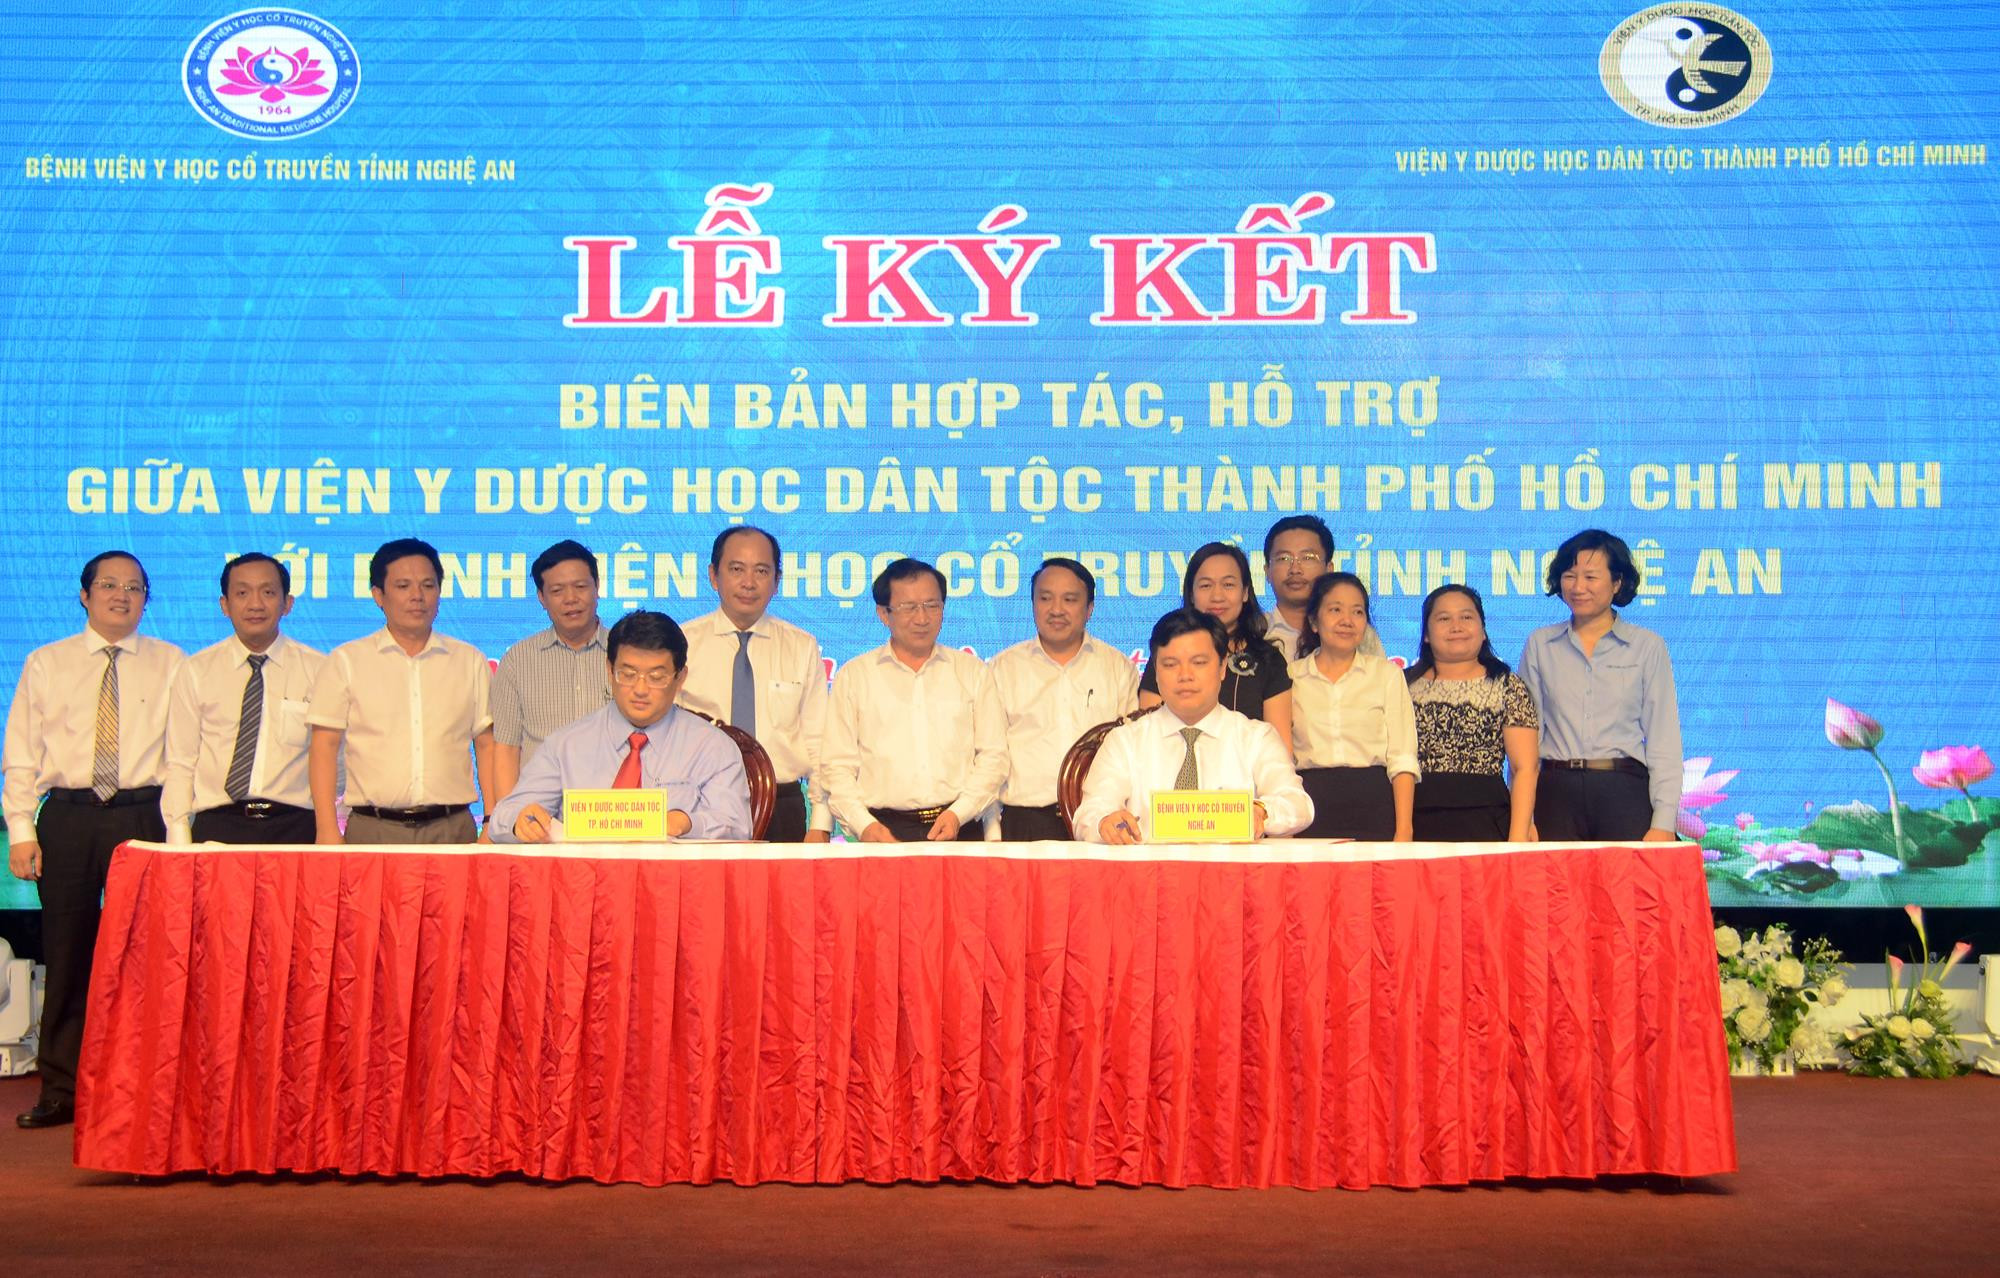 Ký kết hợp tác giữa Viện Y học Dân tộc Tp.Hồ Chí Minh và Bệnh viện Y học Cổ truyền Nghệ An. Ảnh: Thành Chung